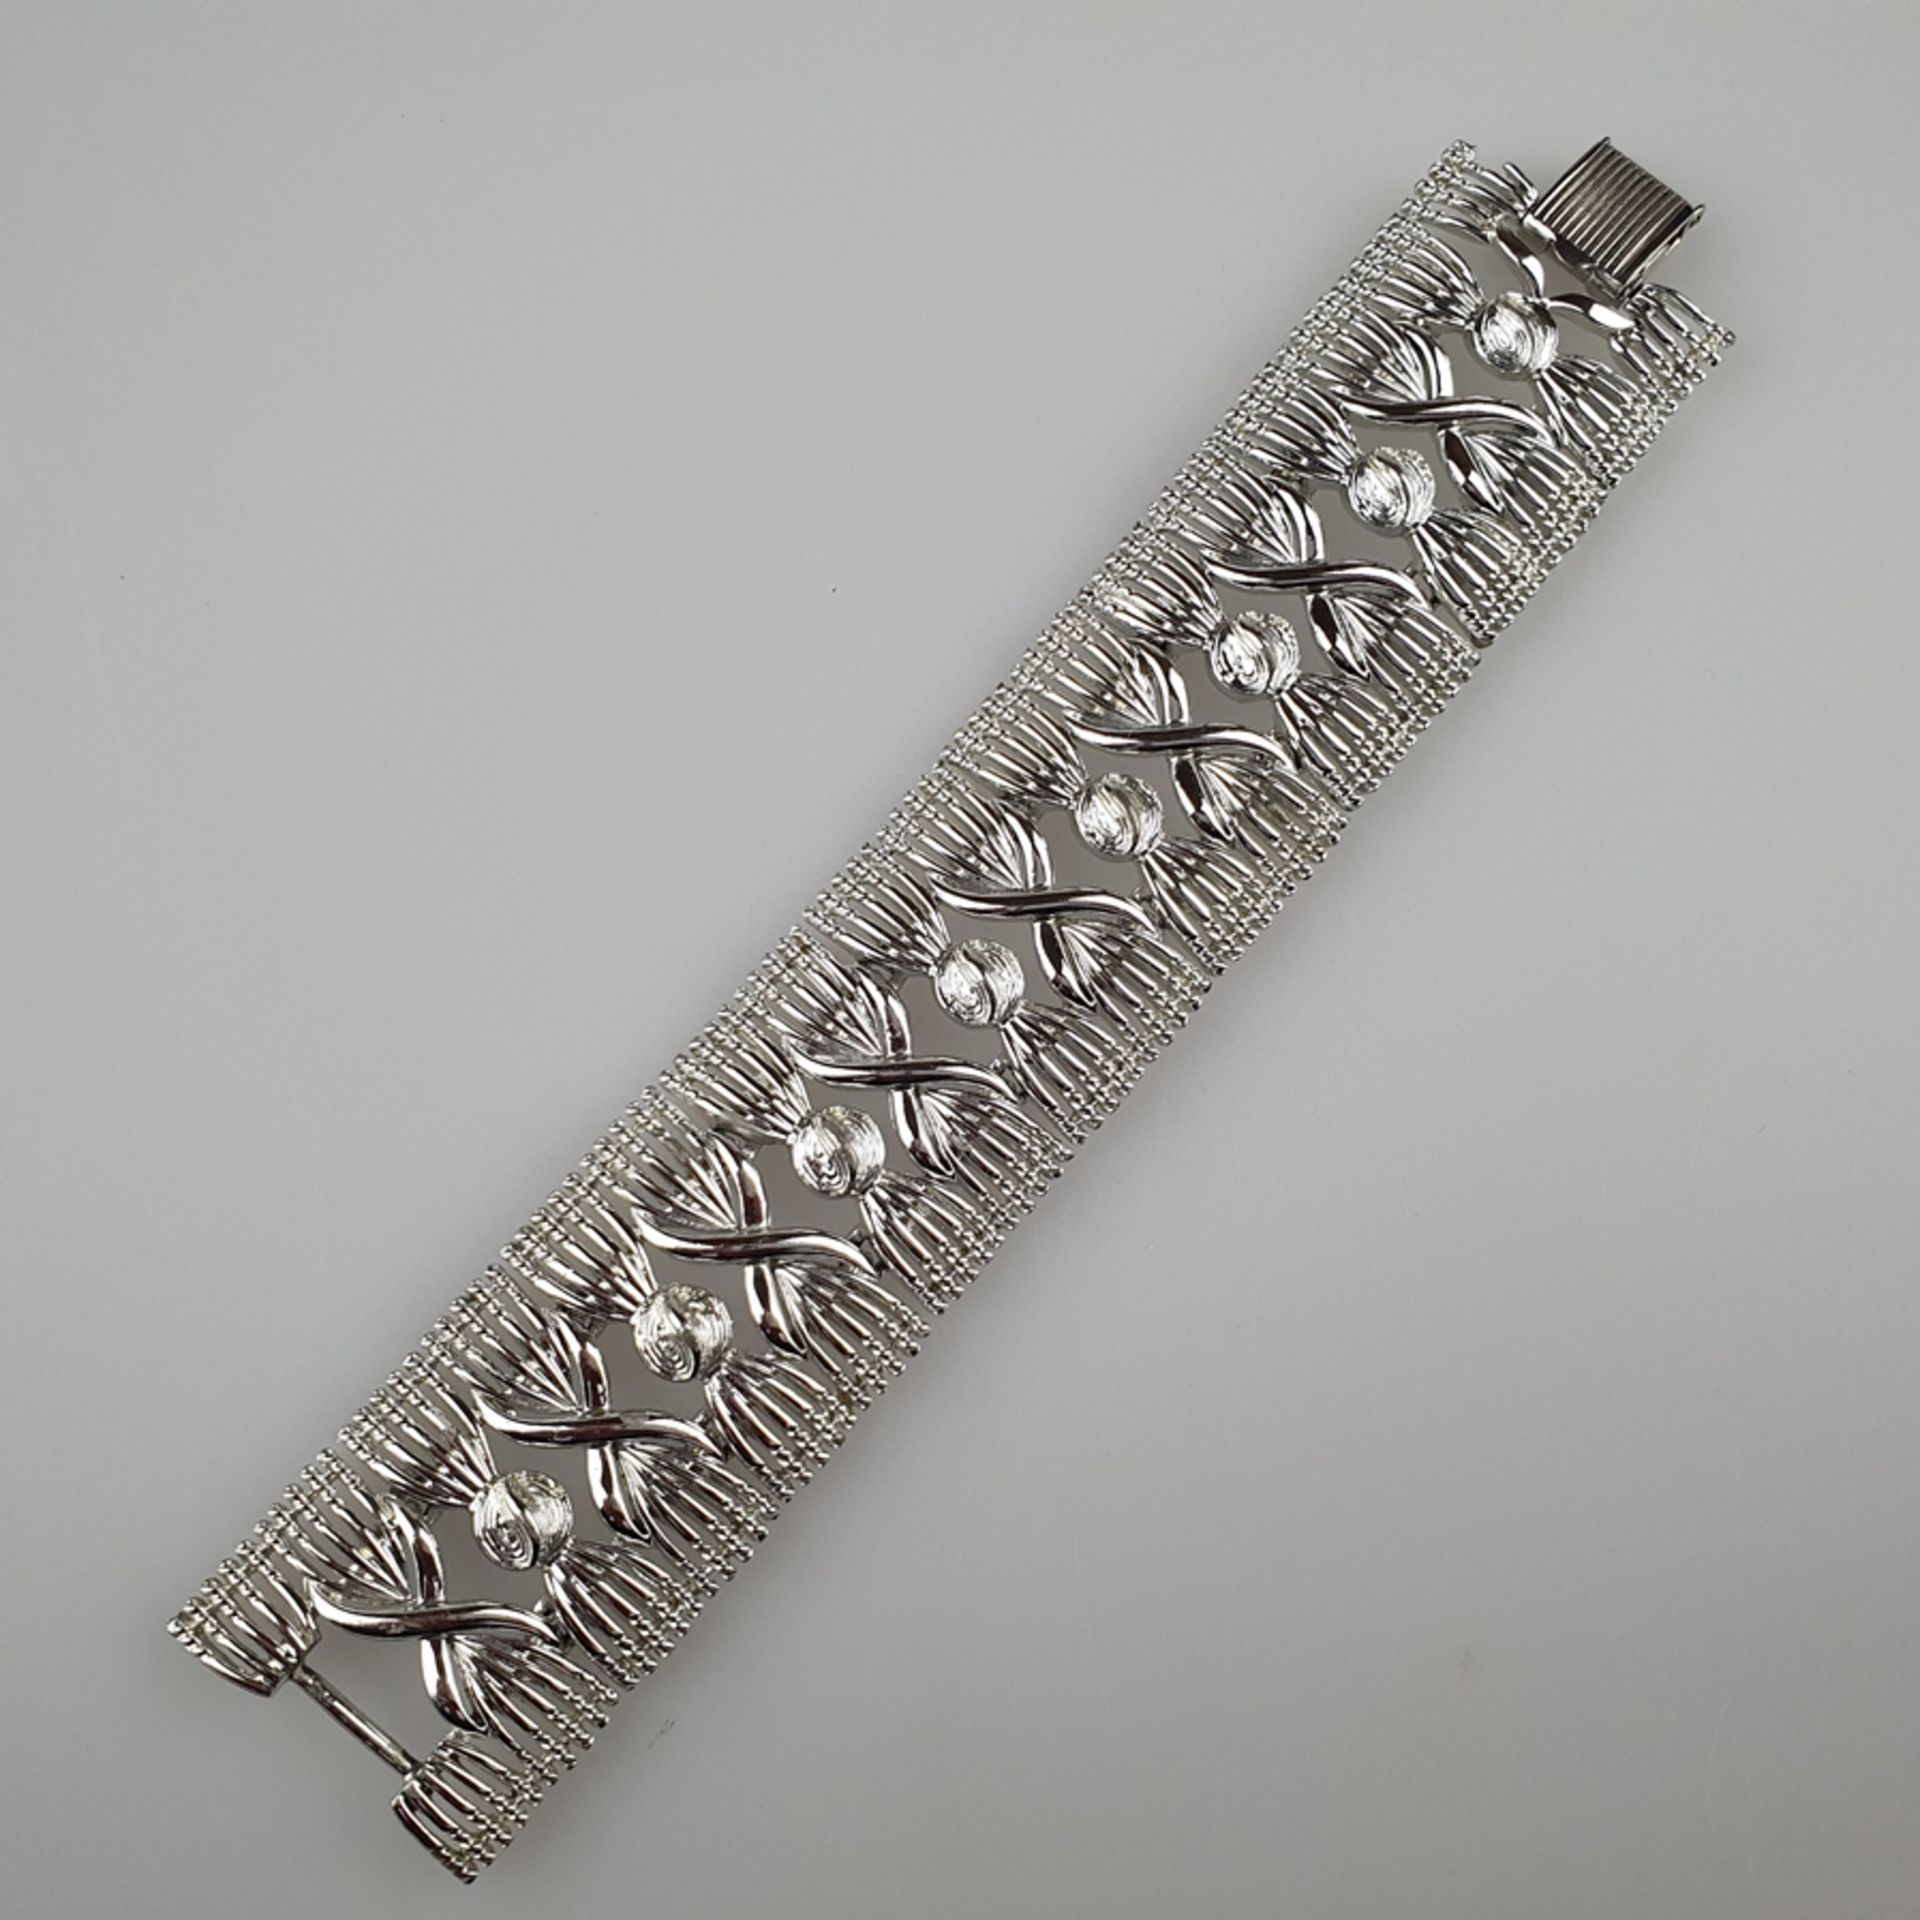 Ausgefallenes Vintage-Armband - CORO / USA, nach 1955, silberfarbenes Metall, bewegliche schleifena